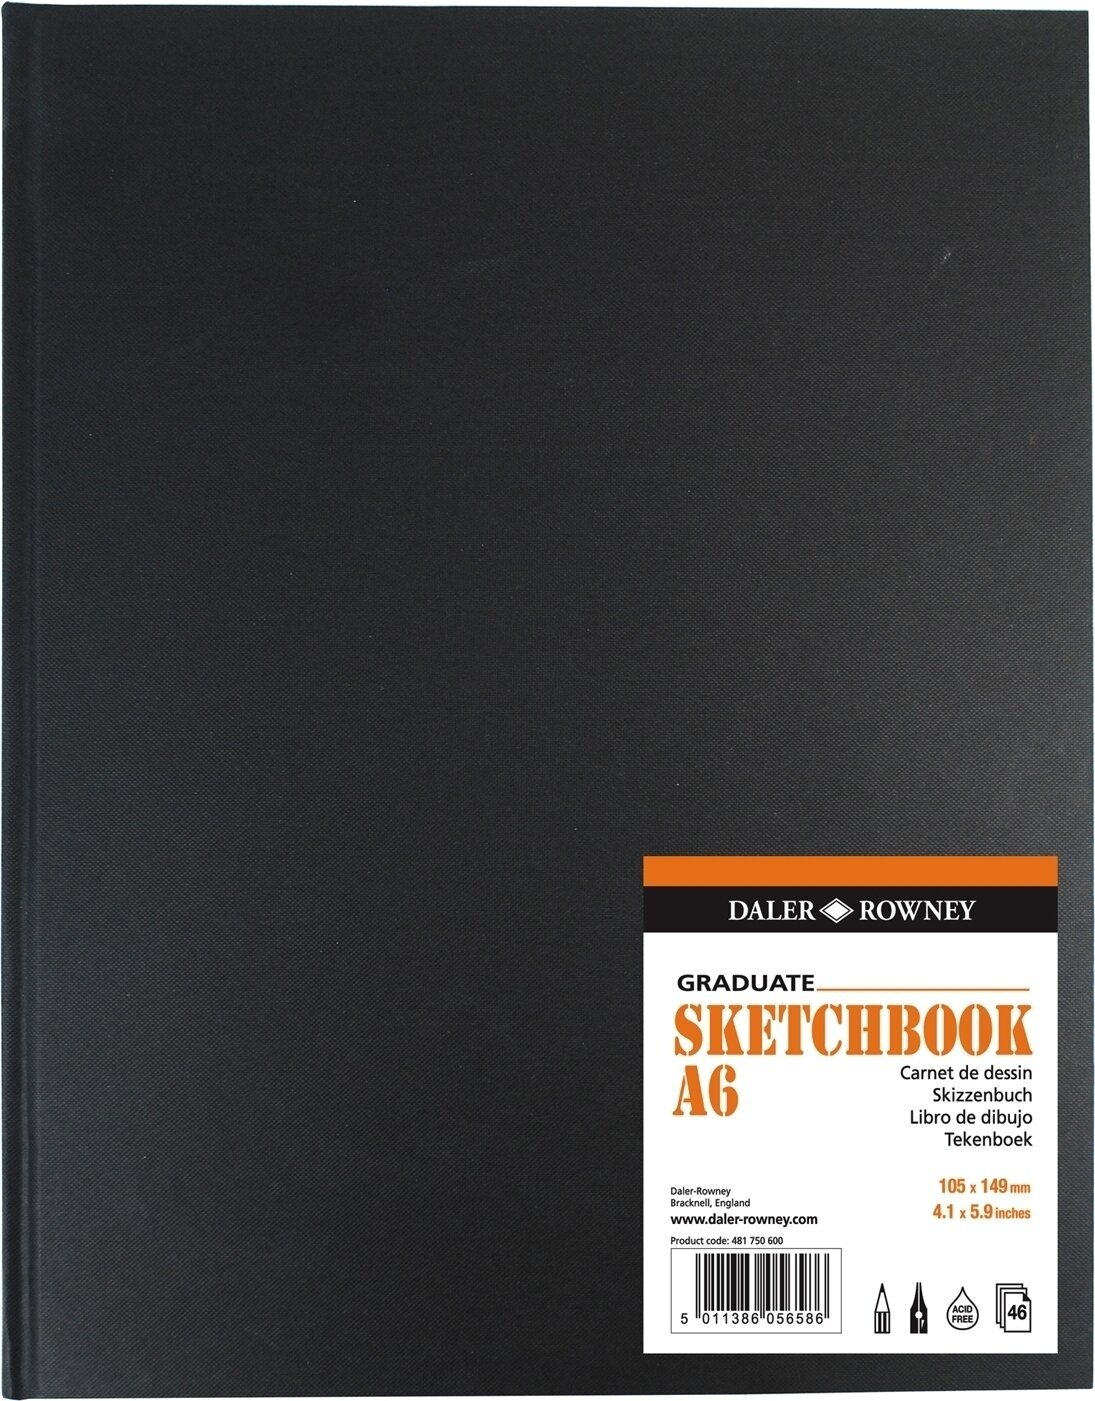 Carnete de Schițe Daler Rowney Graduate Sketchbook Graduate A6 130 g Carnete de Schițe